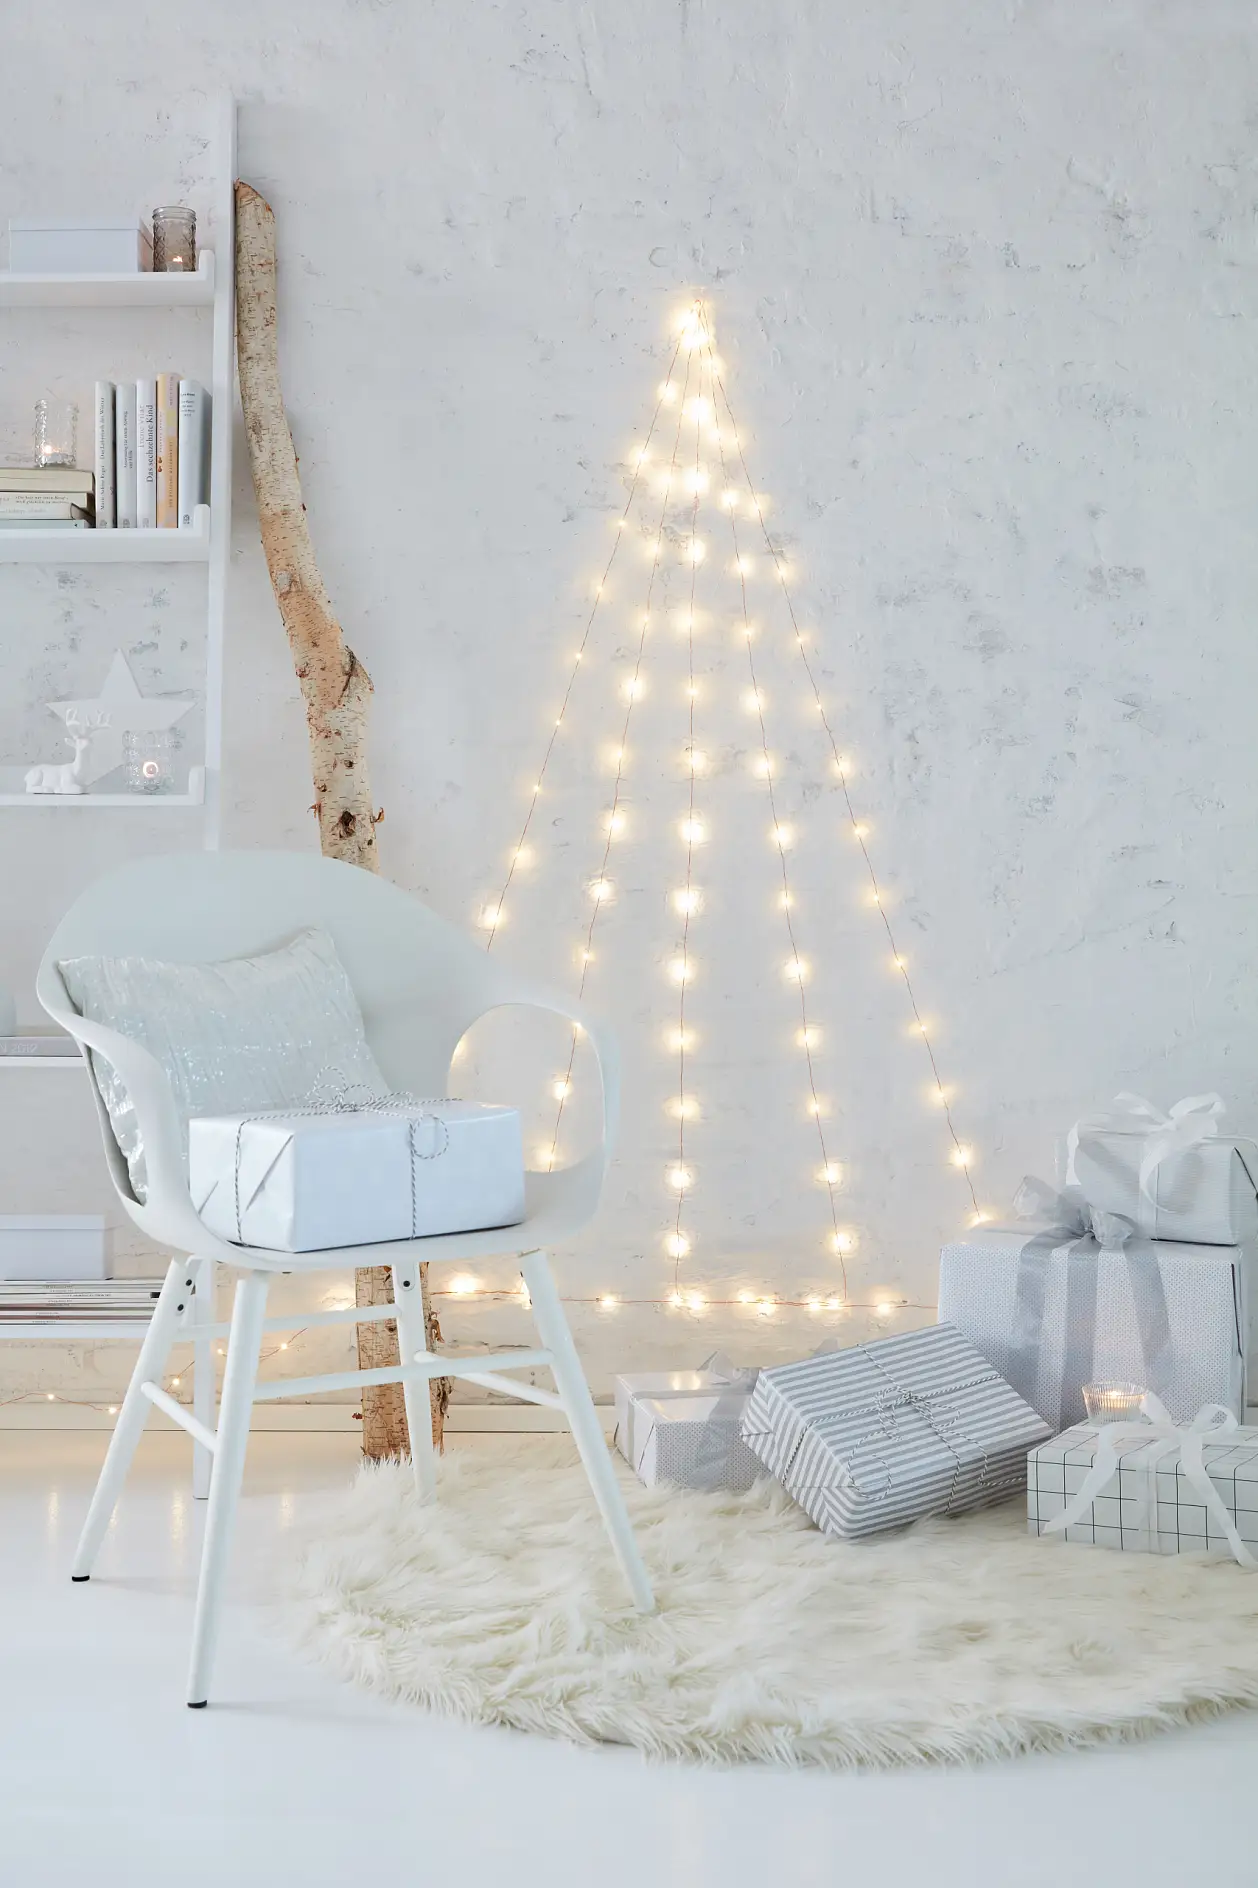 Απολαύστε το LED Χριστουγεννιάτικο δέντρο σας!